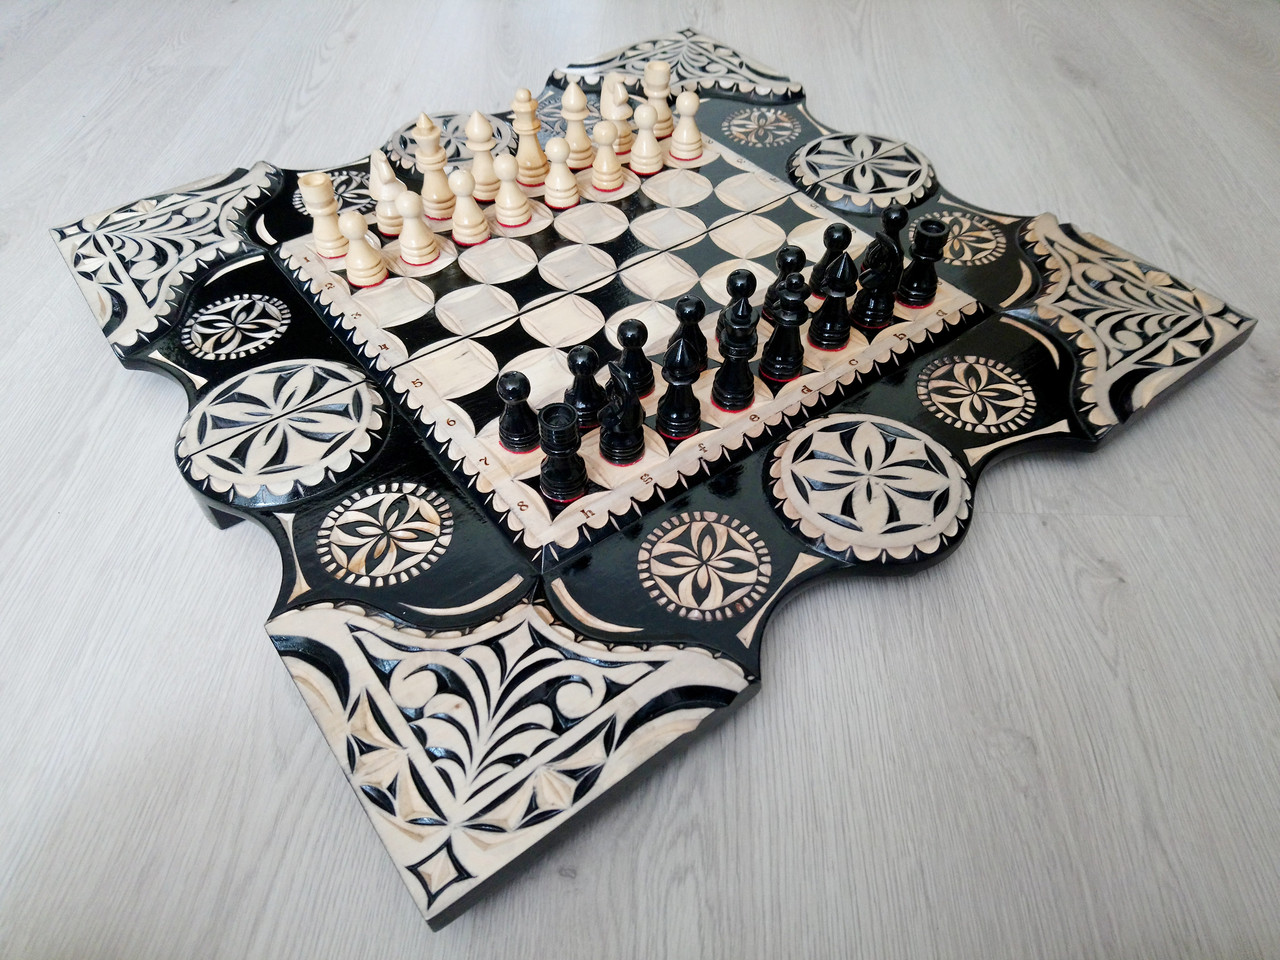 Ексклюзивні шахи ручної роботи